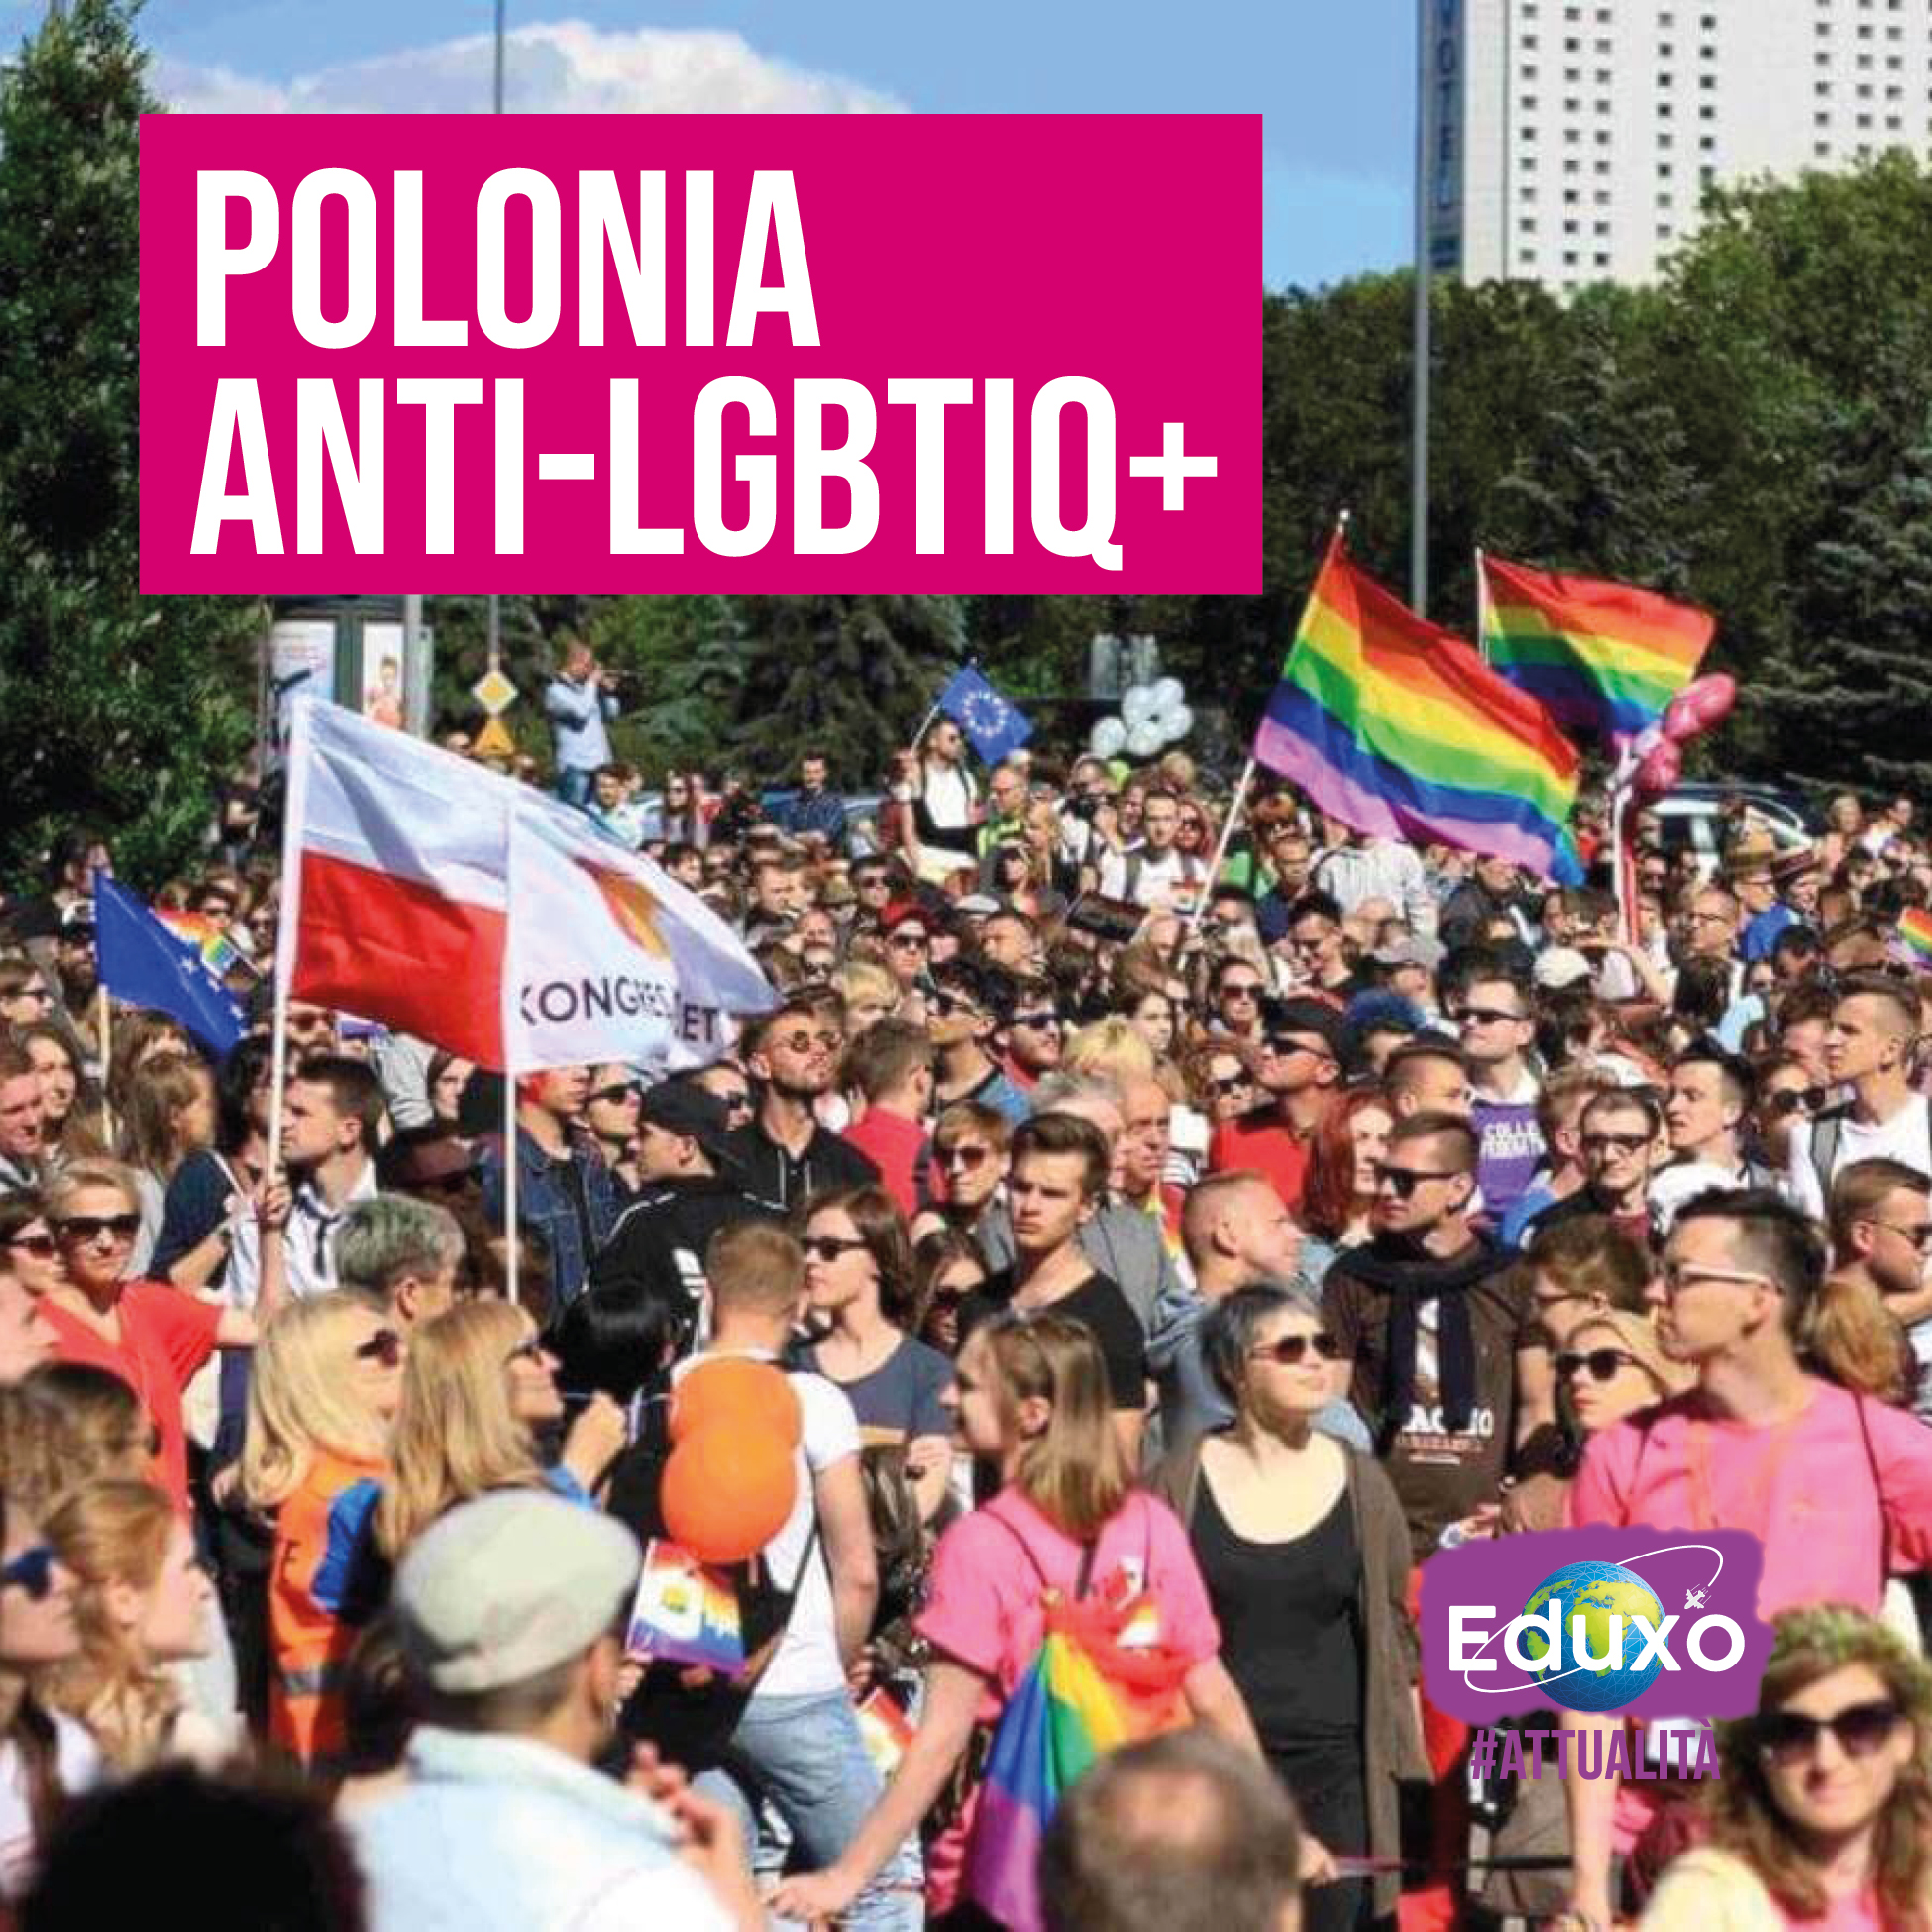 Al momento stai visualizzando Polonia anti LGBT